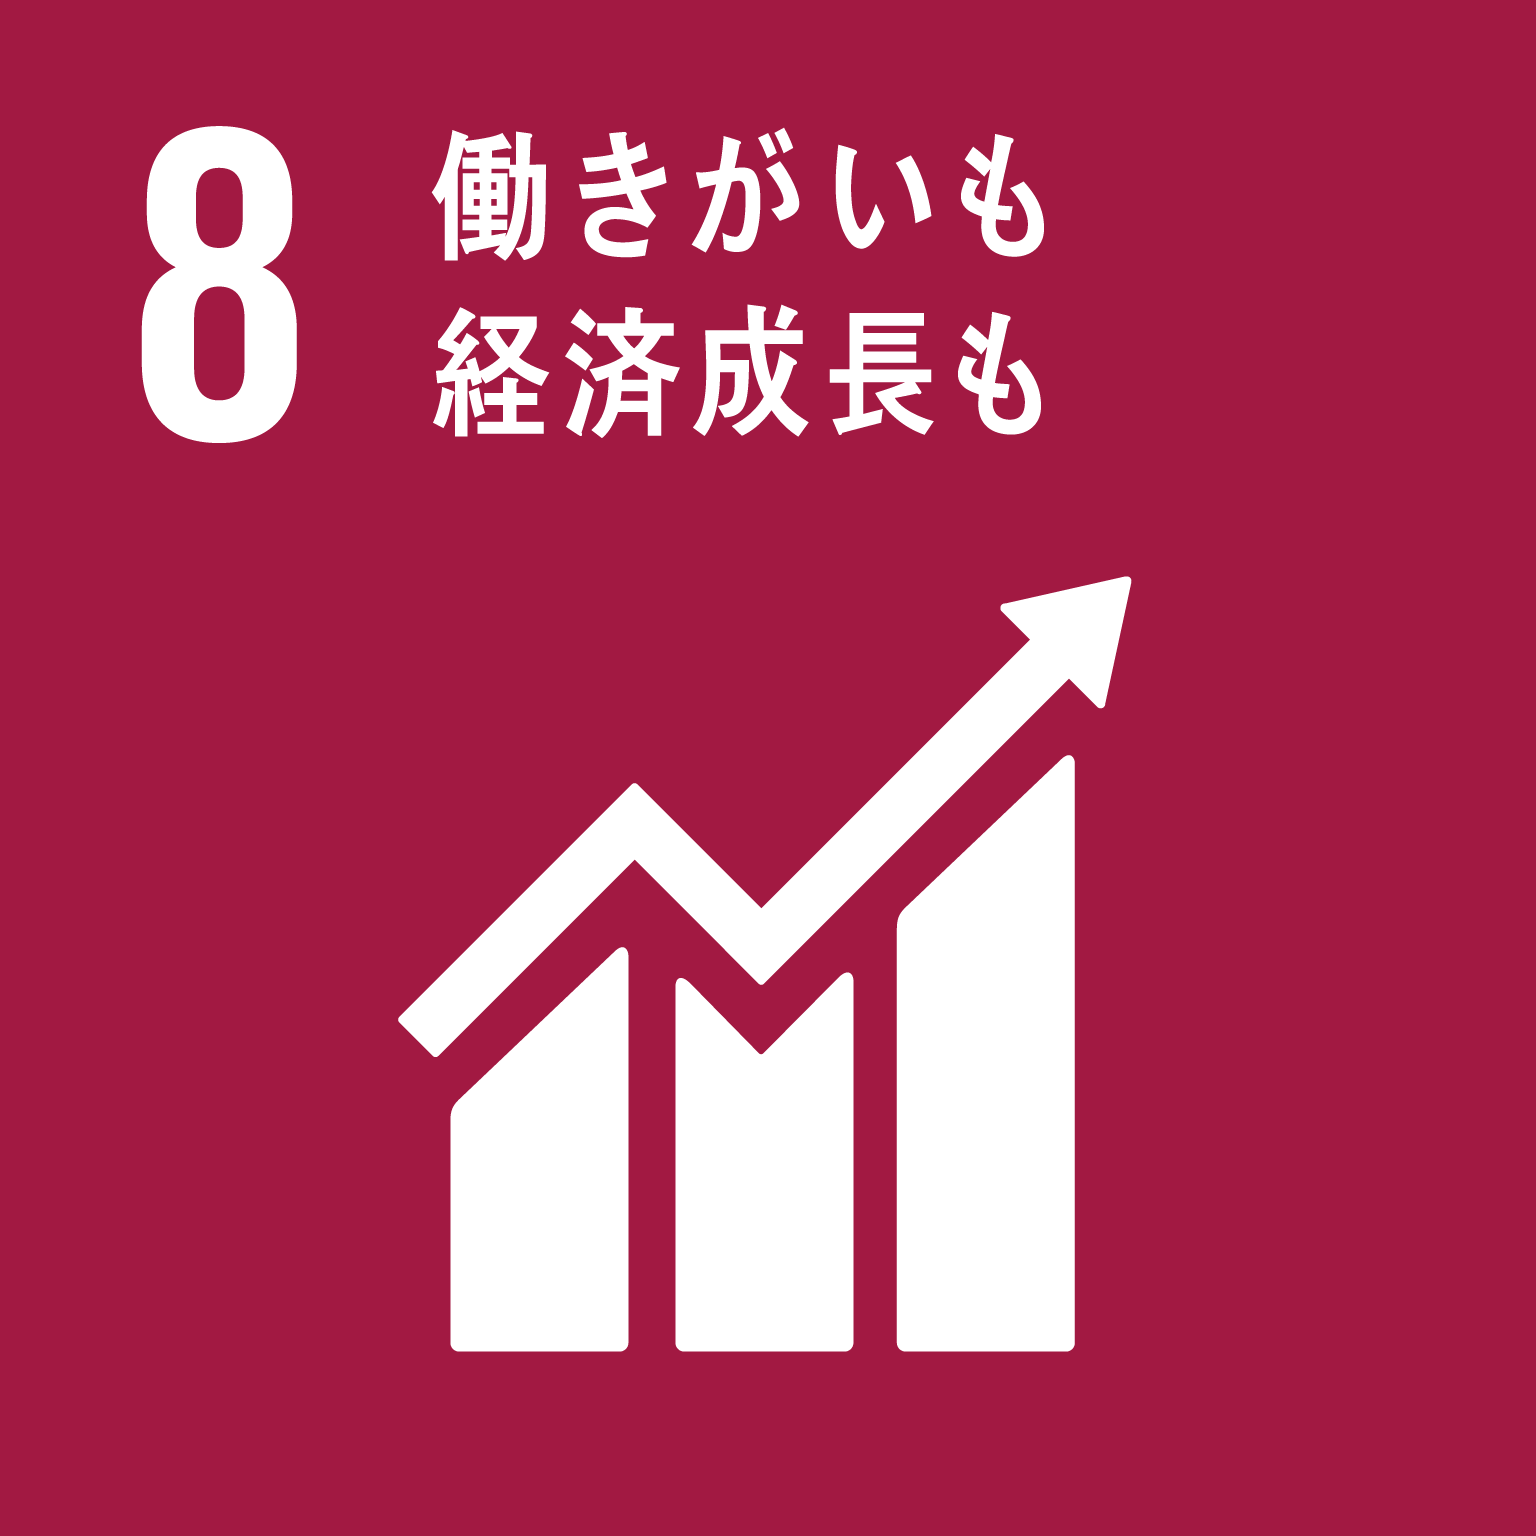 「8.働きがいも経済成長も」の文字と目標8のロゴ